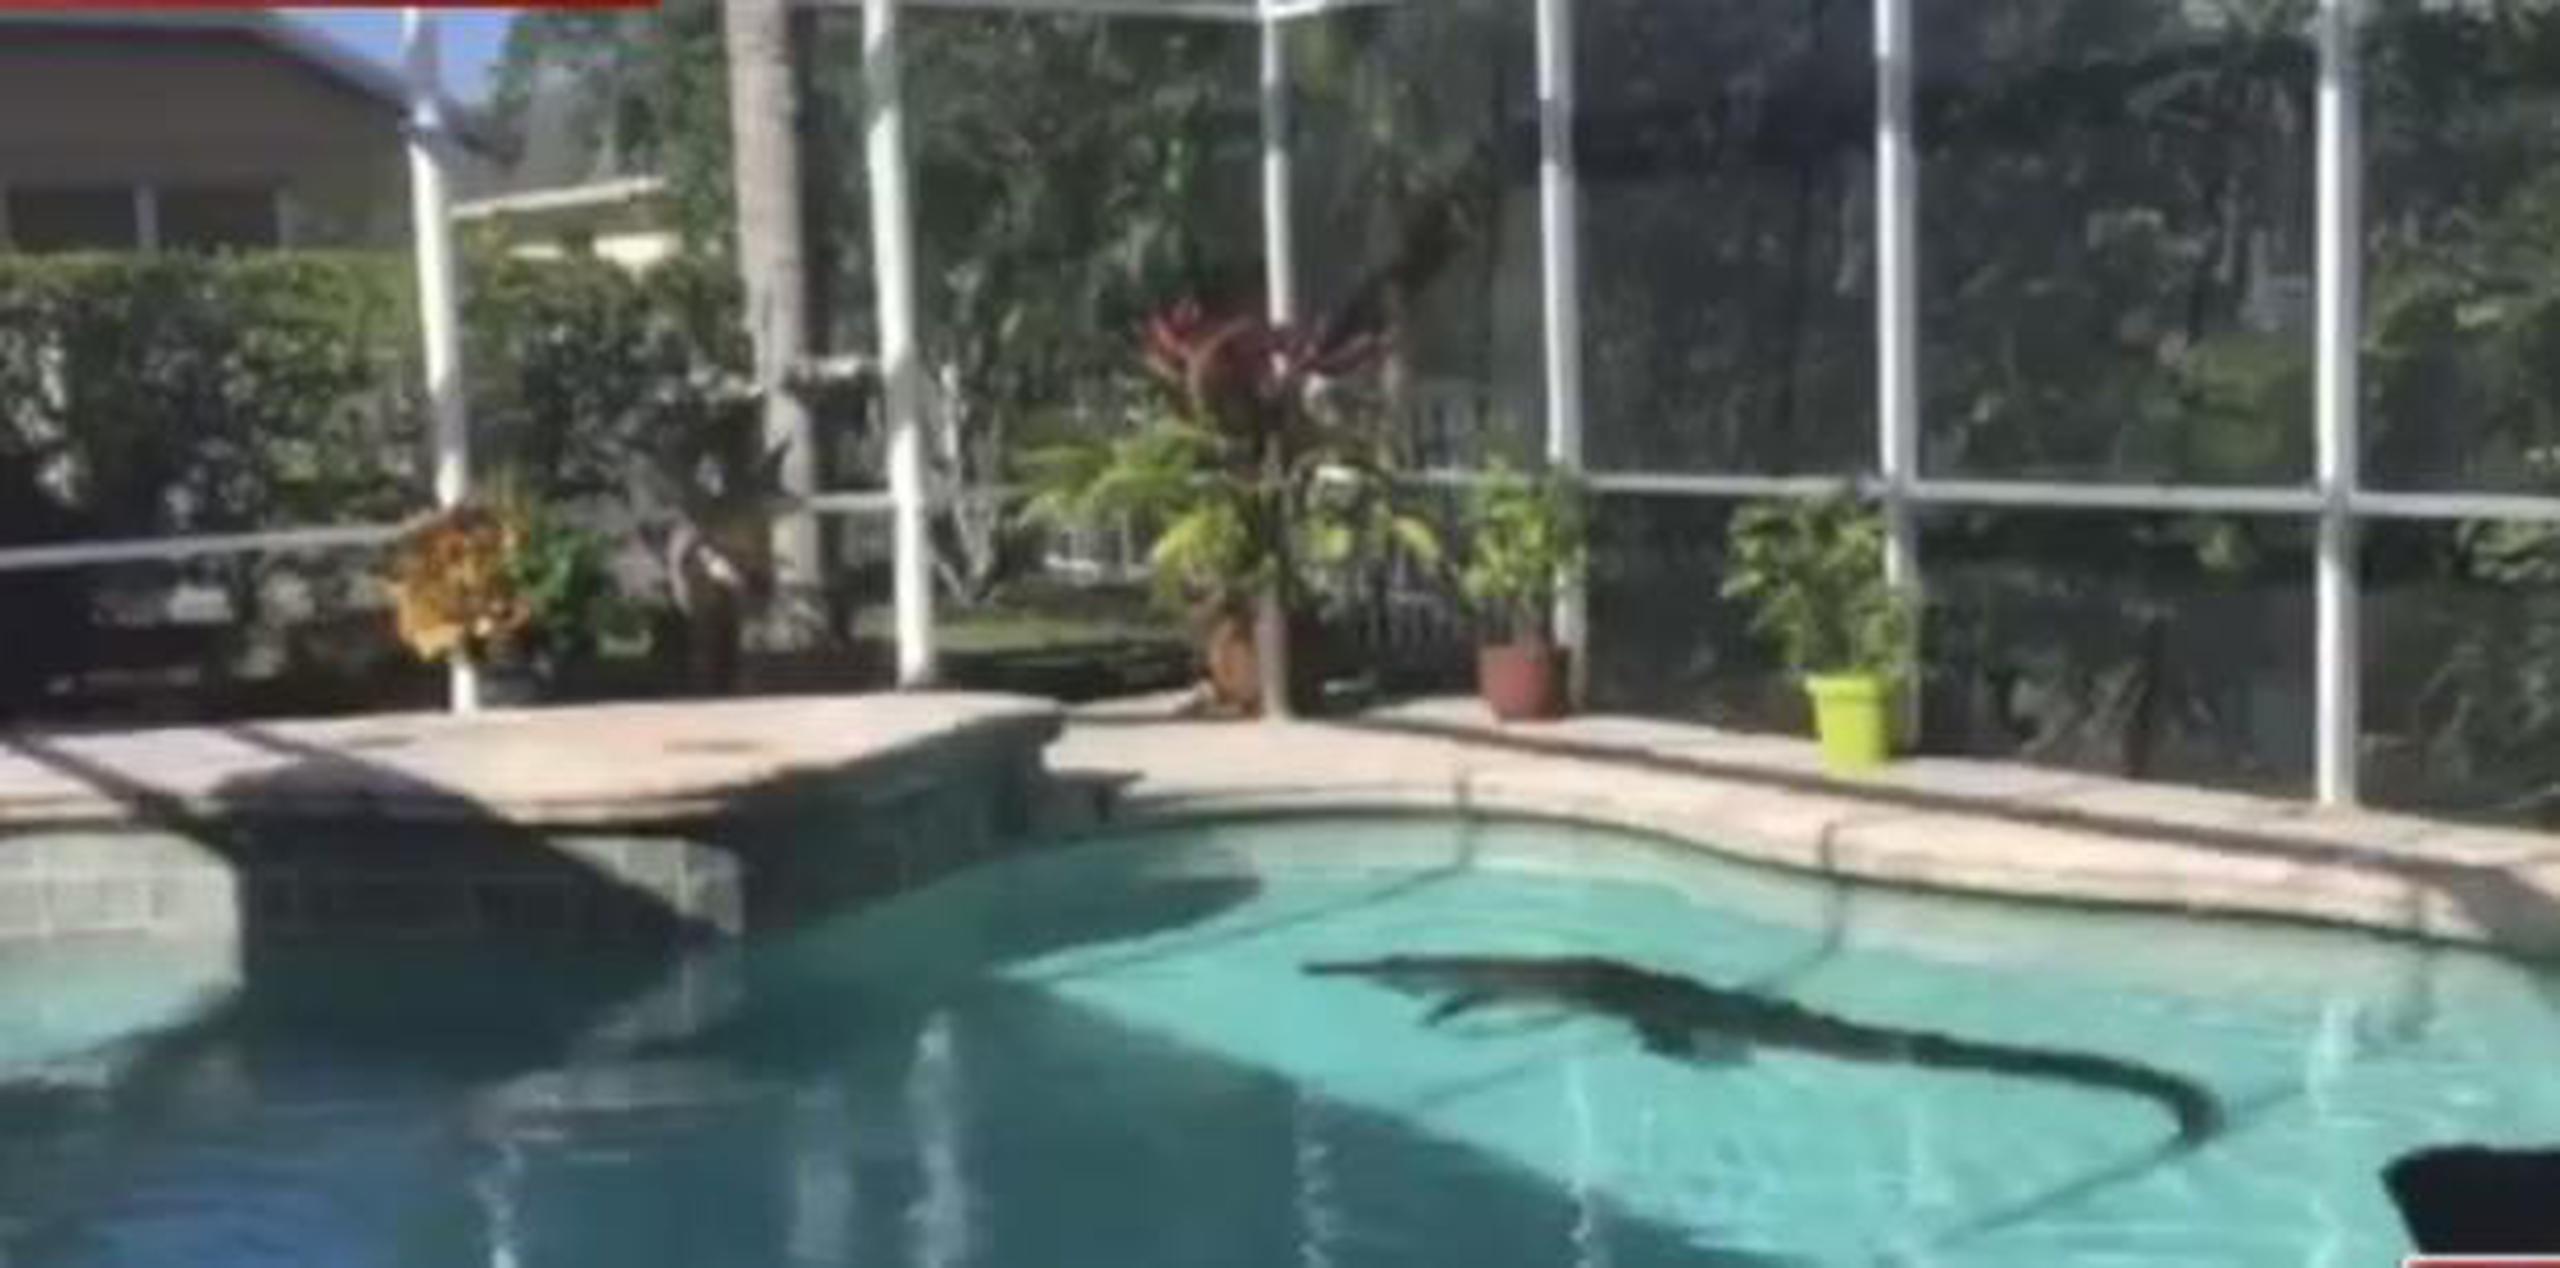 Un experto con permiso estatal atrapó y sacó al caimán de la piscina. (Vía ABC Action News - WFTS - Tampa Bay)